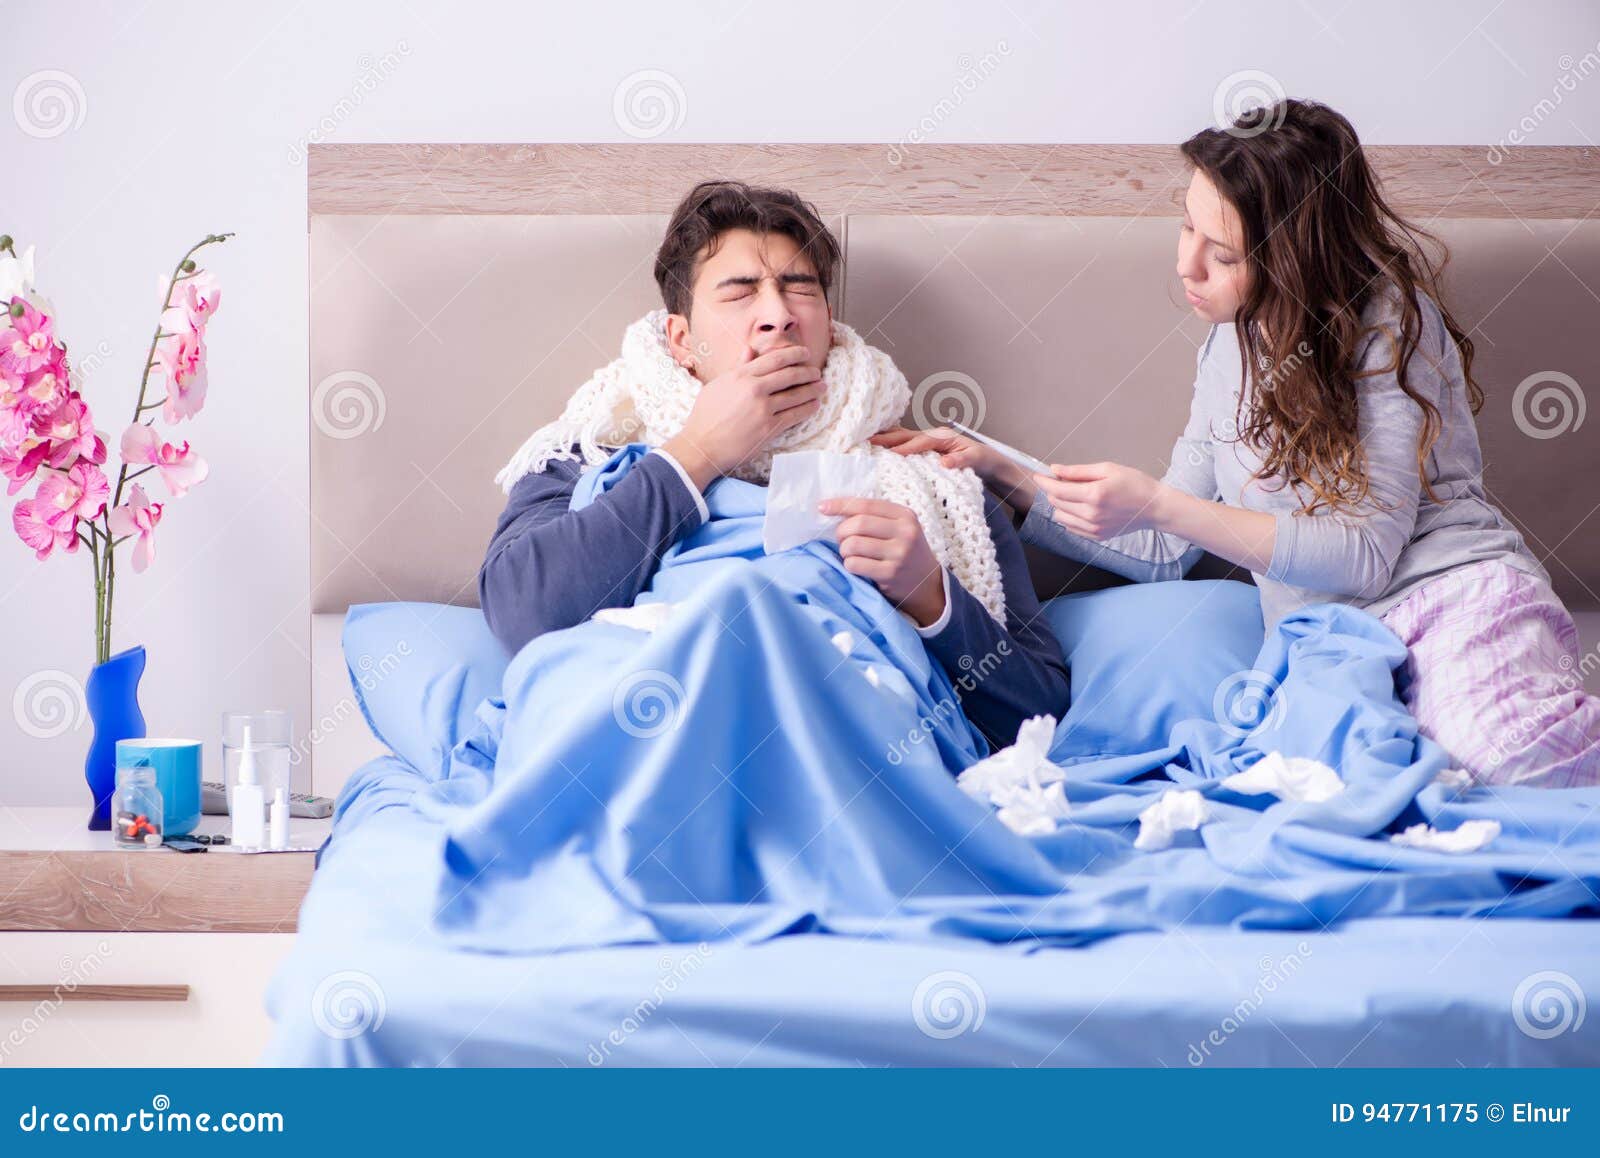 Видео больной муж. Жена у постели больного мужа. Жена болеет. Больной муж. Больной в кругу семьи.